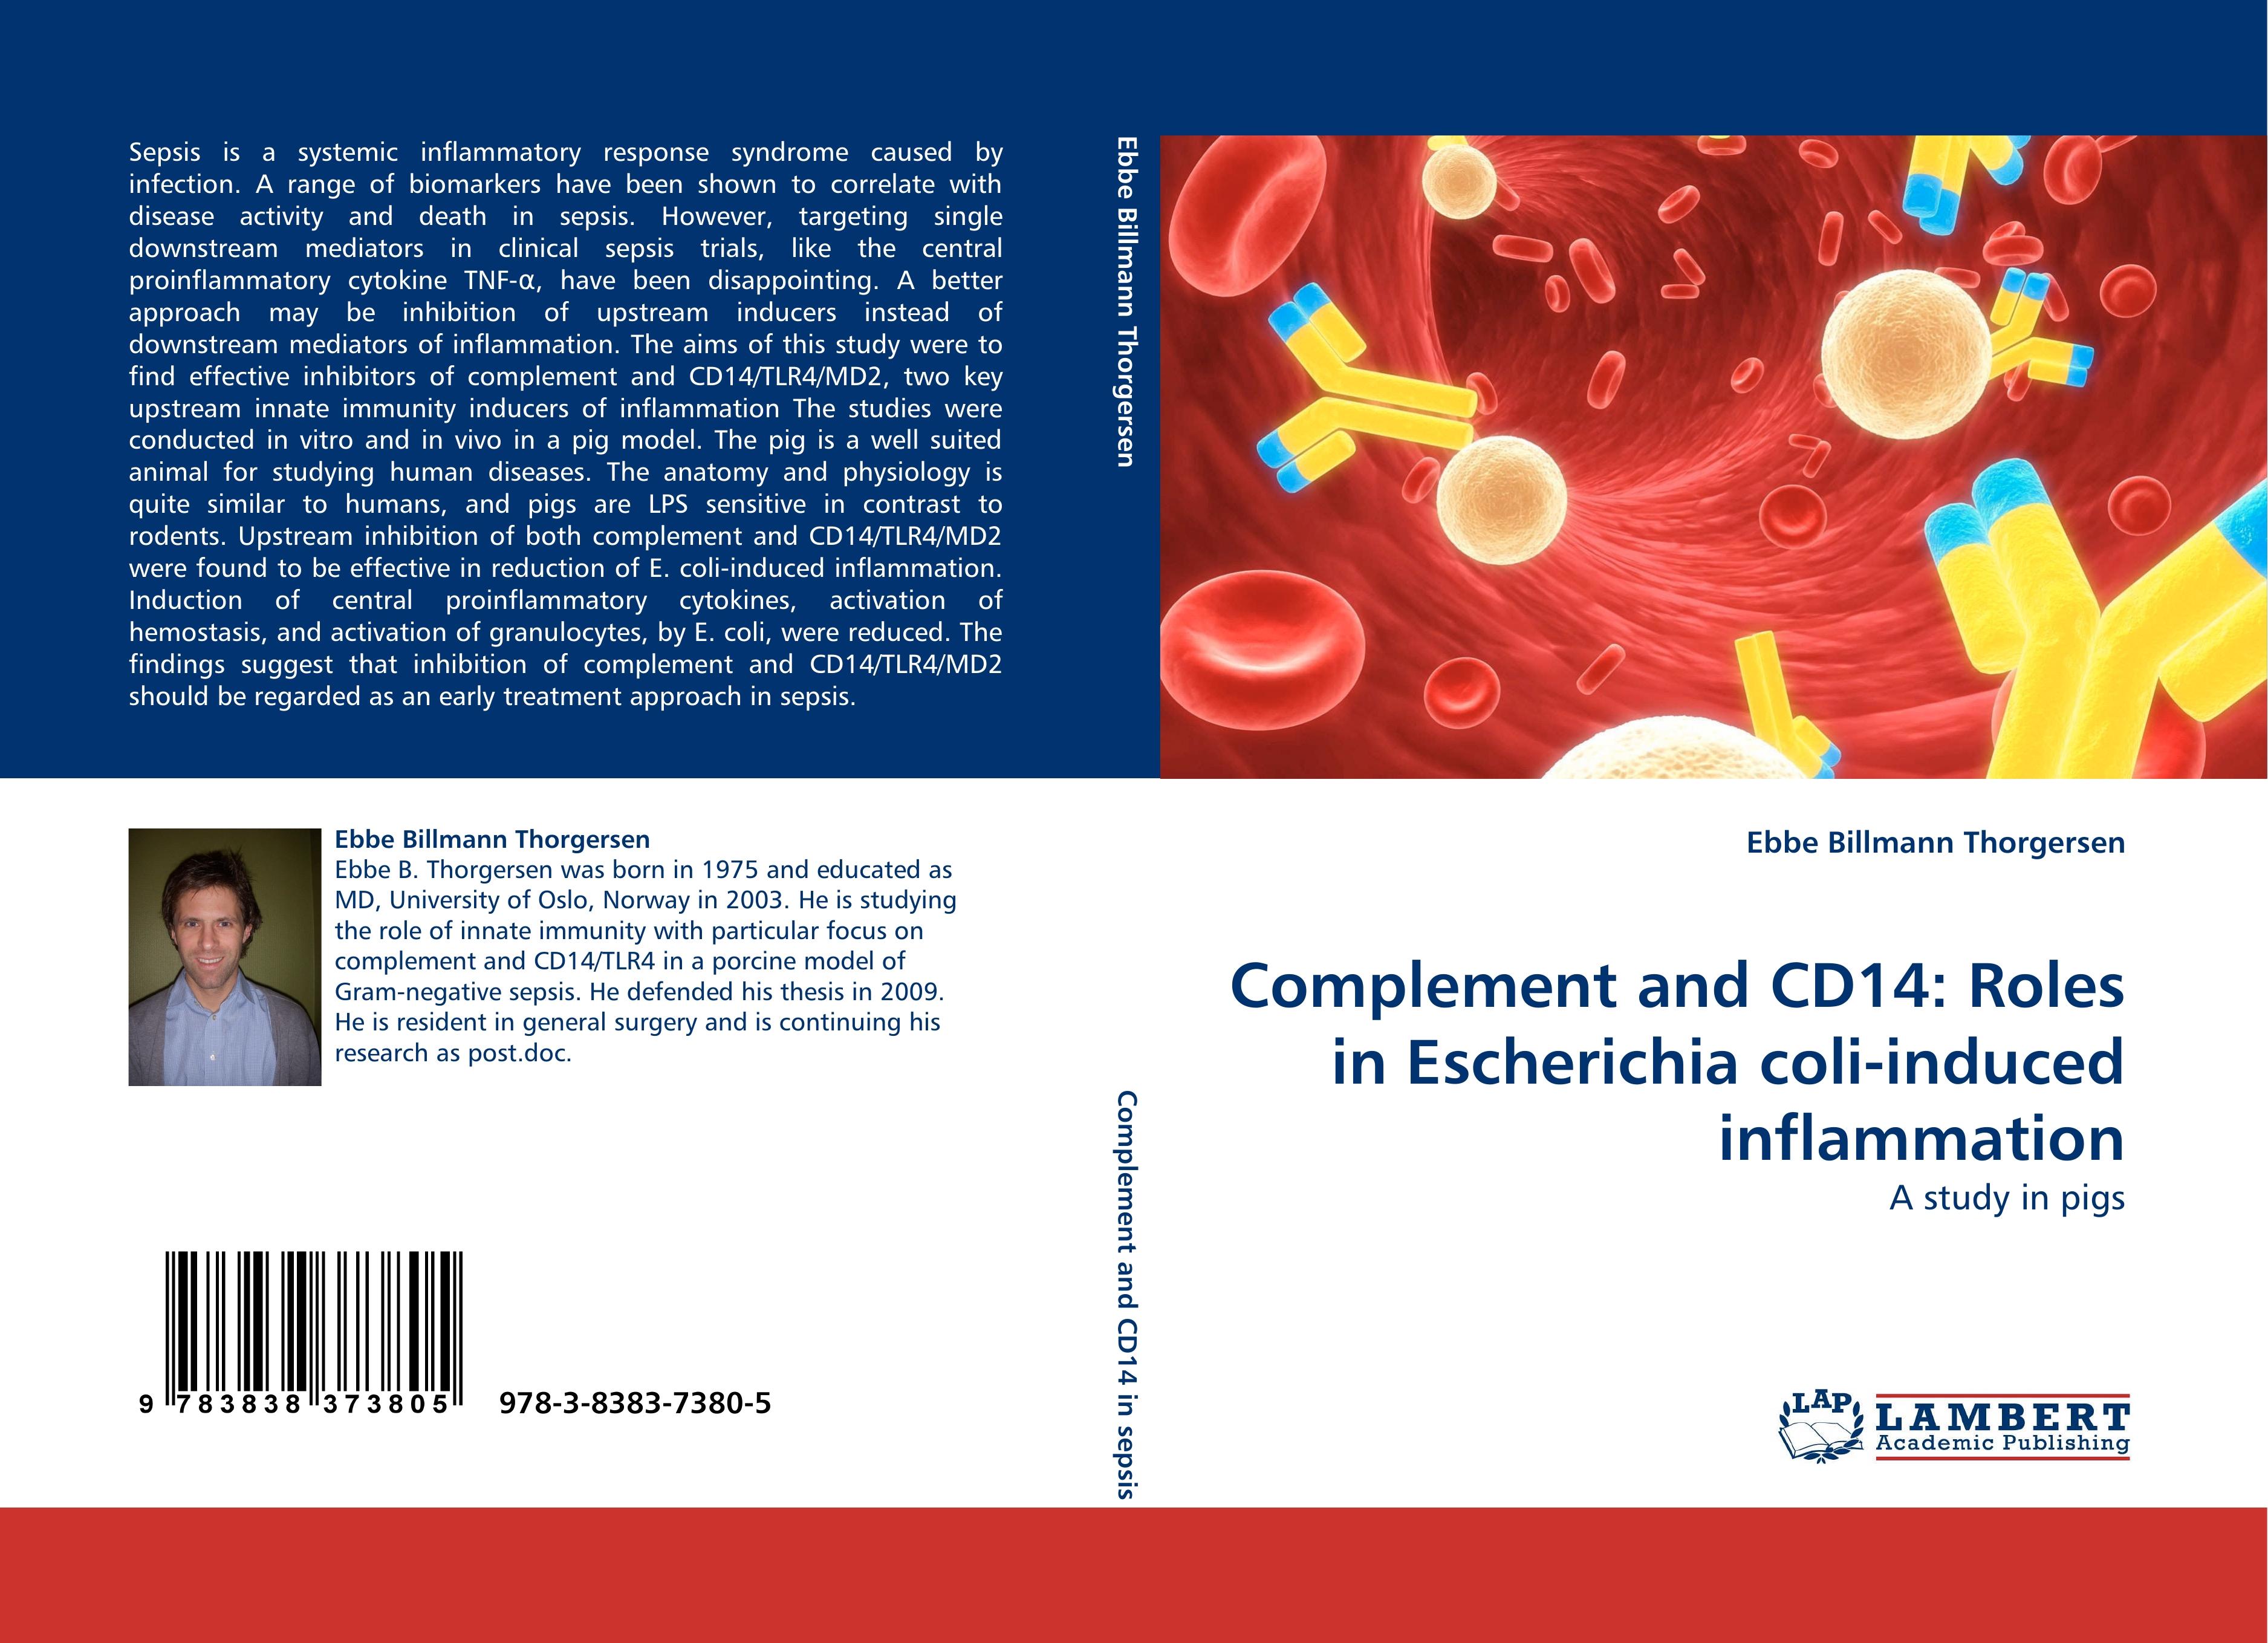 Complement and CD14: Roles in Escherichia coli-induced inflammation | A study in pigs | Ebbe Billmann Thorgersen | Taschenbuch | Paperback | 124 S. | Englisch | 2010 | LAP LAMBERT Academic Publishing - Thorgersen, Ebbe Billmann